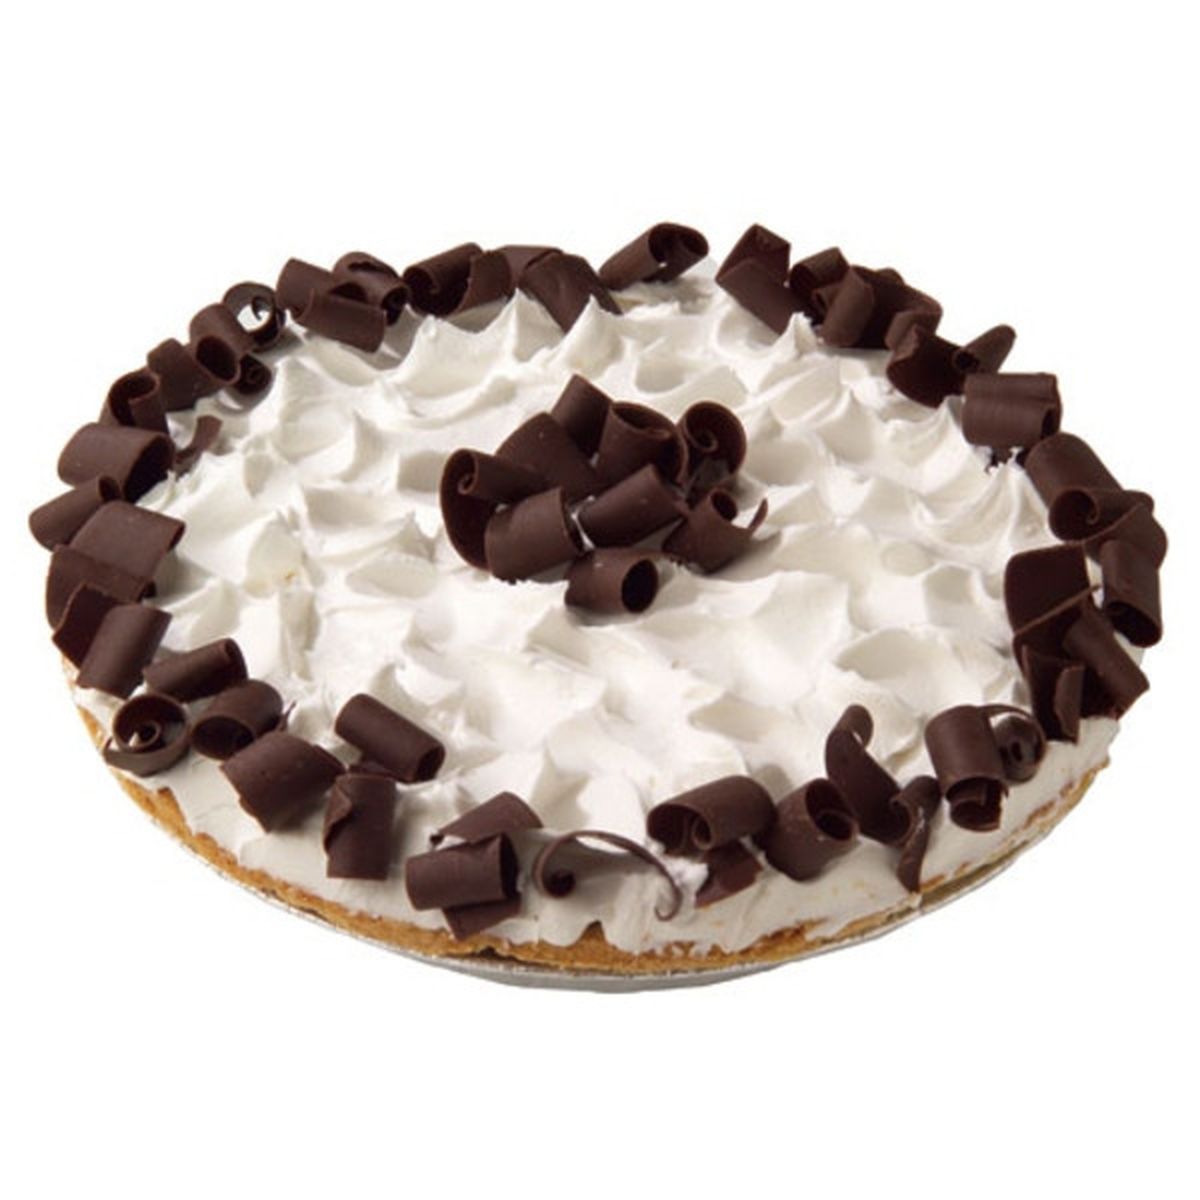 Calories in Wegmans Large Premium Chocolate Cream Pie